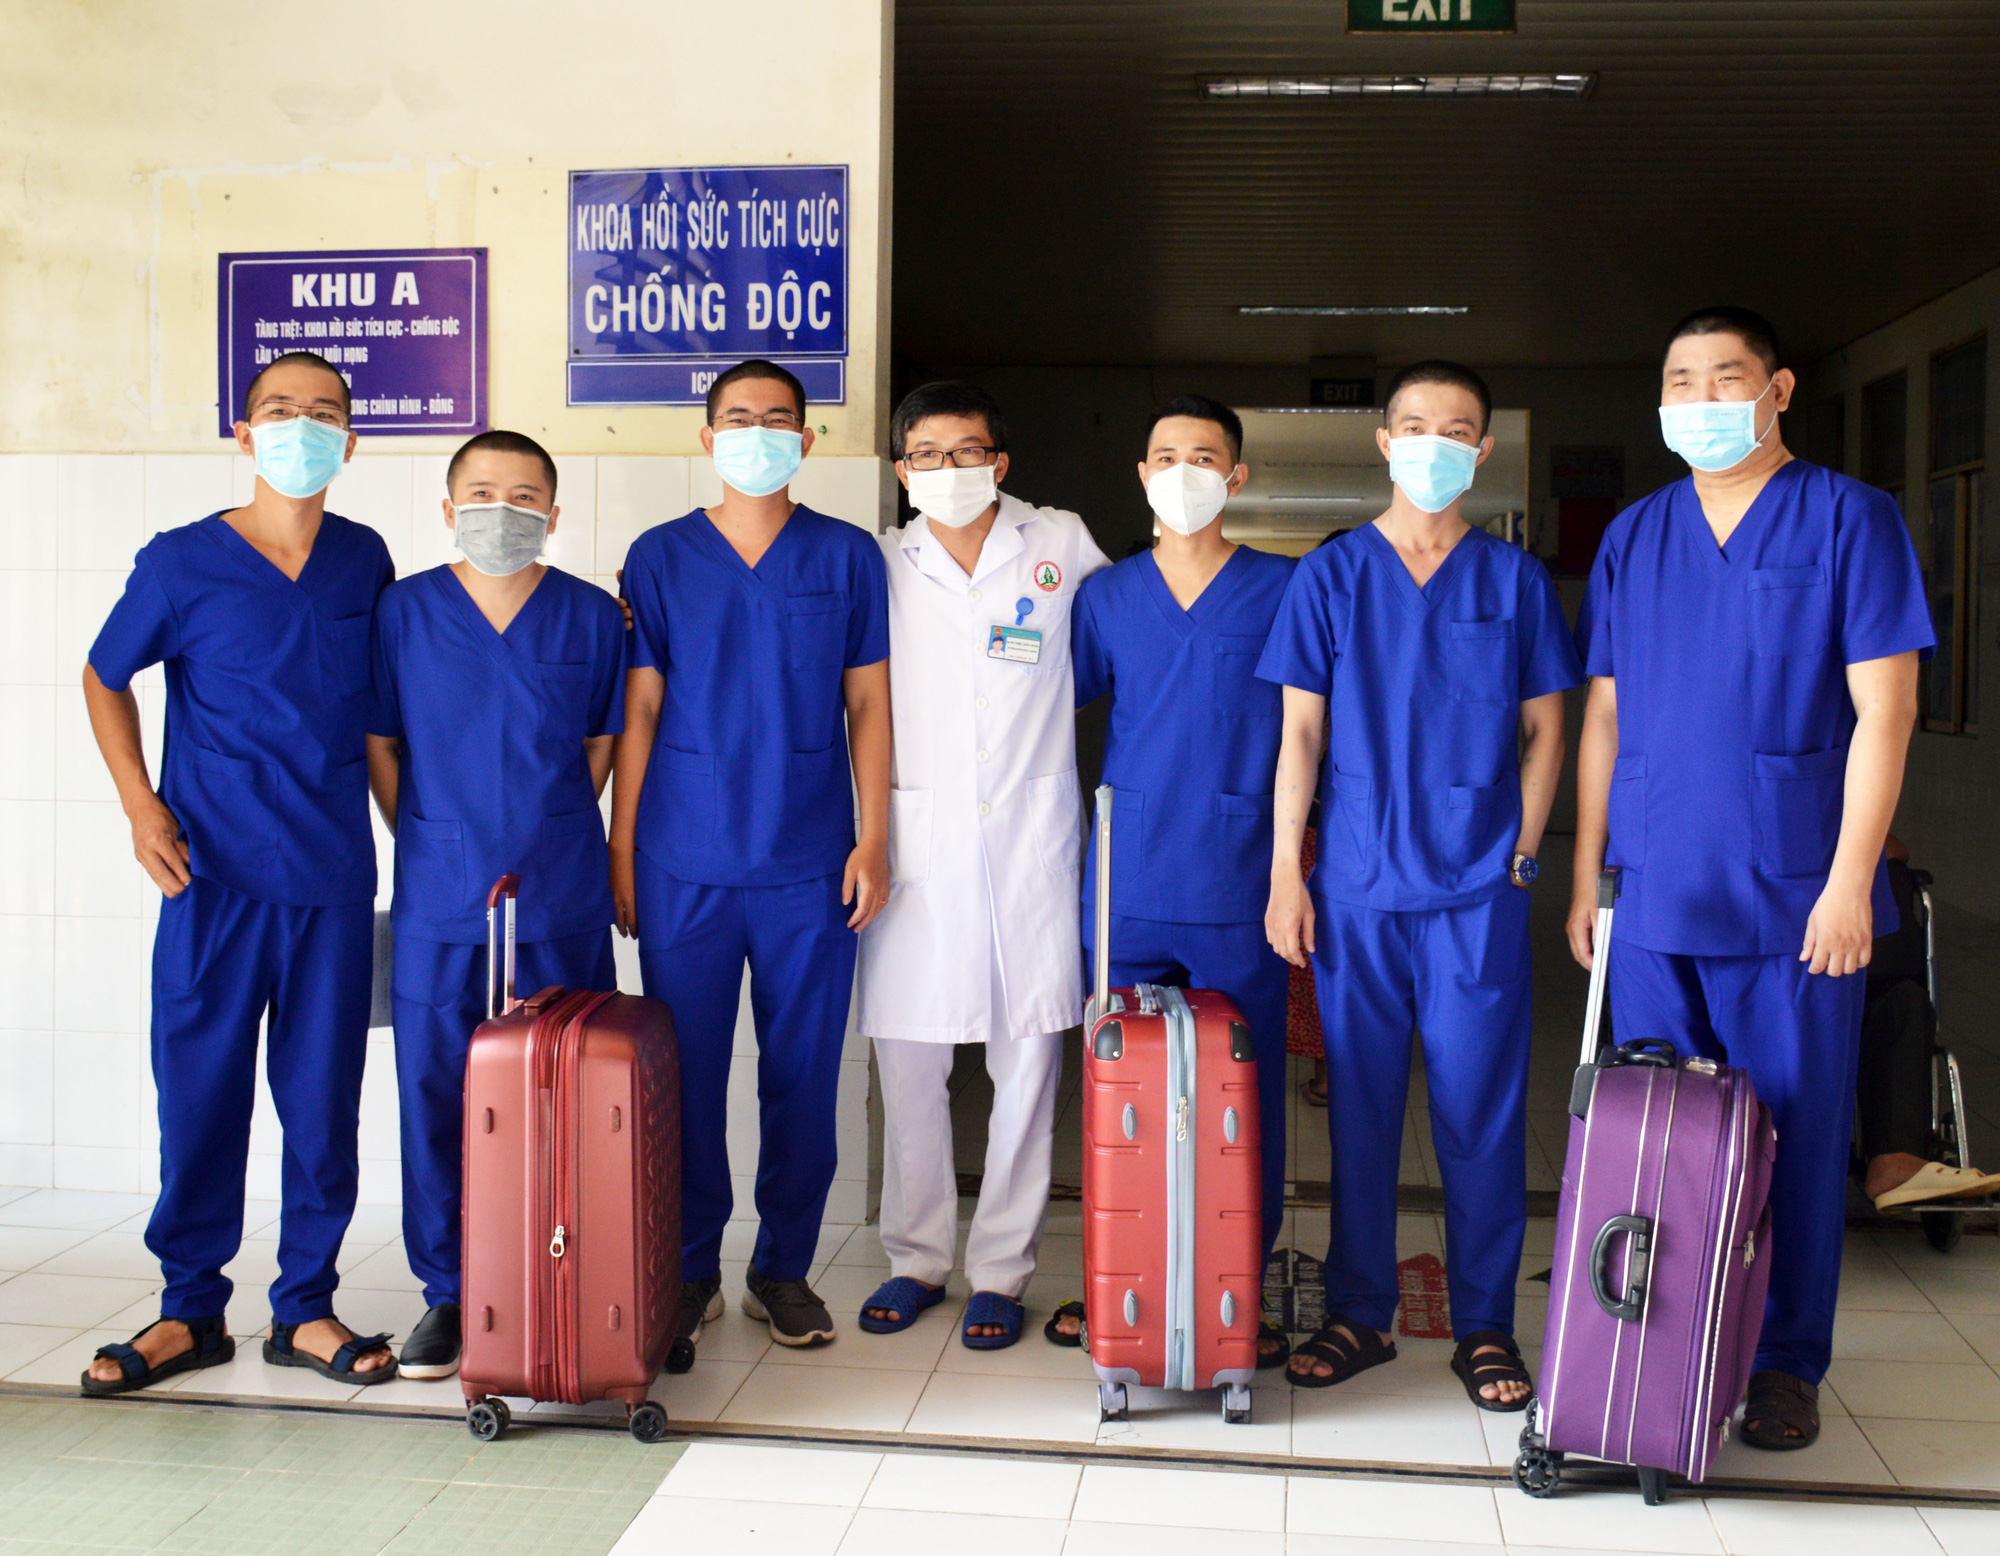 Đoàn y tế của Cà Mau lên đường đi hỗ trợ Bệnh viện Chợ Rẫy  - Ảnh 2.